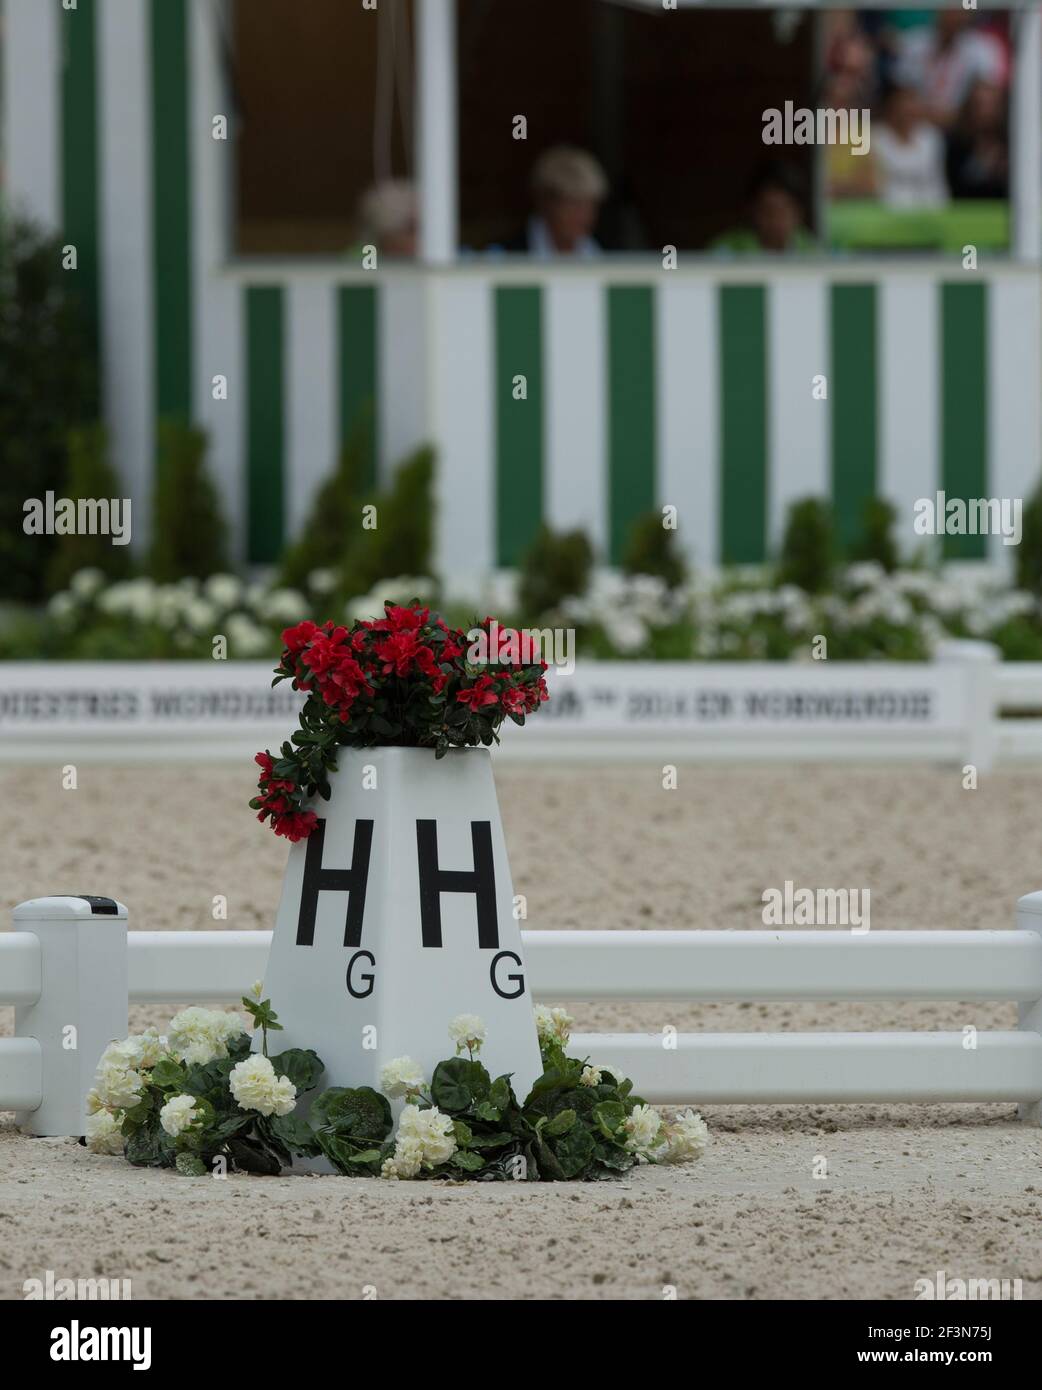 bague de dressage équestrienne lettre H avec boîte de fleurs de geraniums rouges en haut à l'extérieur de la bague de compétition de dressage avec juges de dressage en arrière-plan Banque D'Images